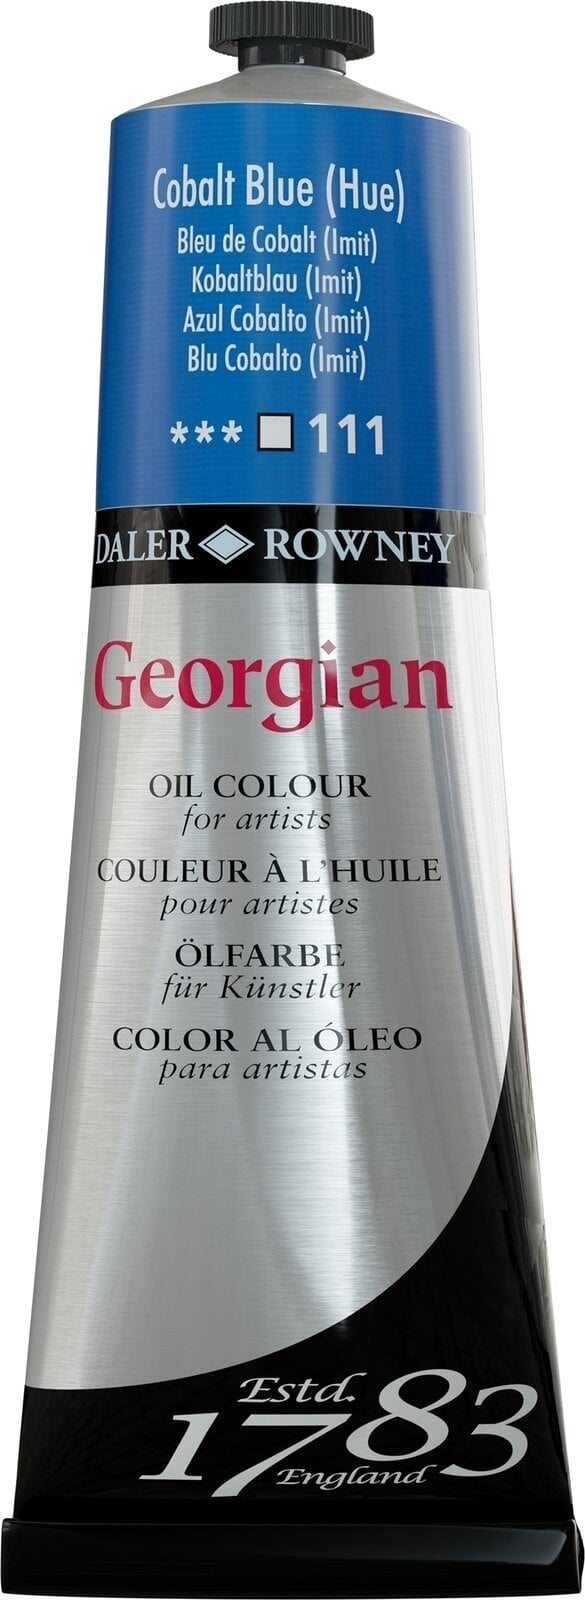 Oil colour Daler Rowney Georgian Oil Paint Cobalt Blue Hue 225 ml 1 pc